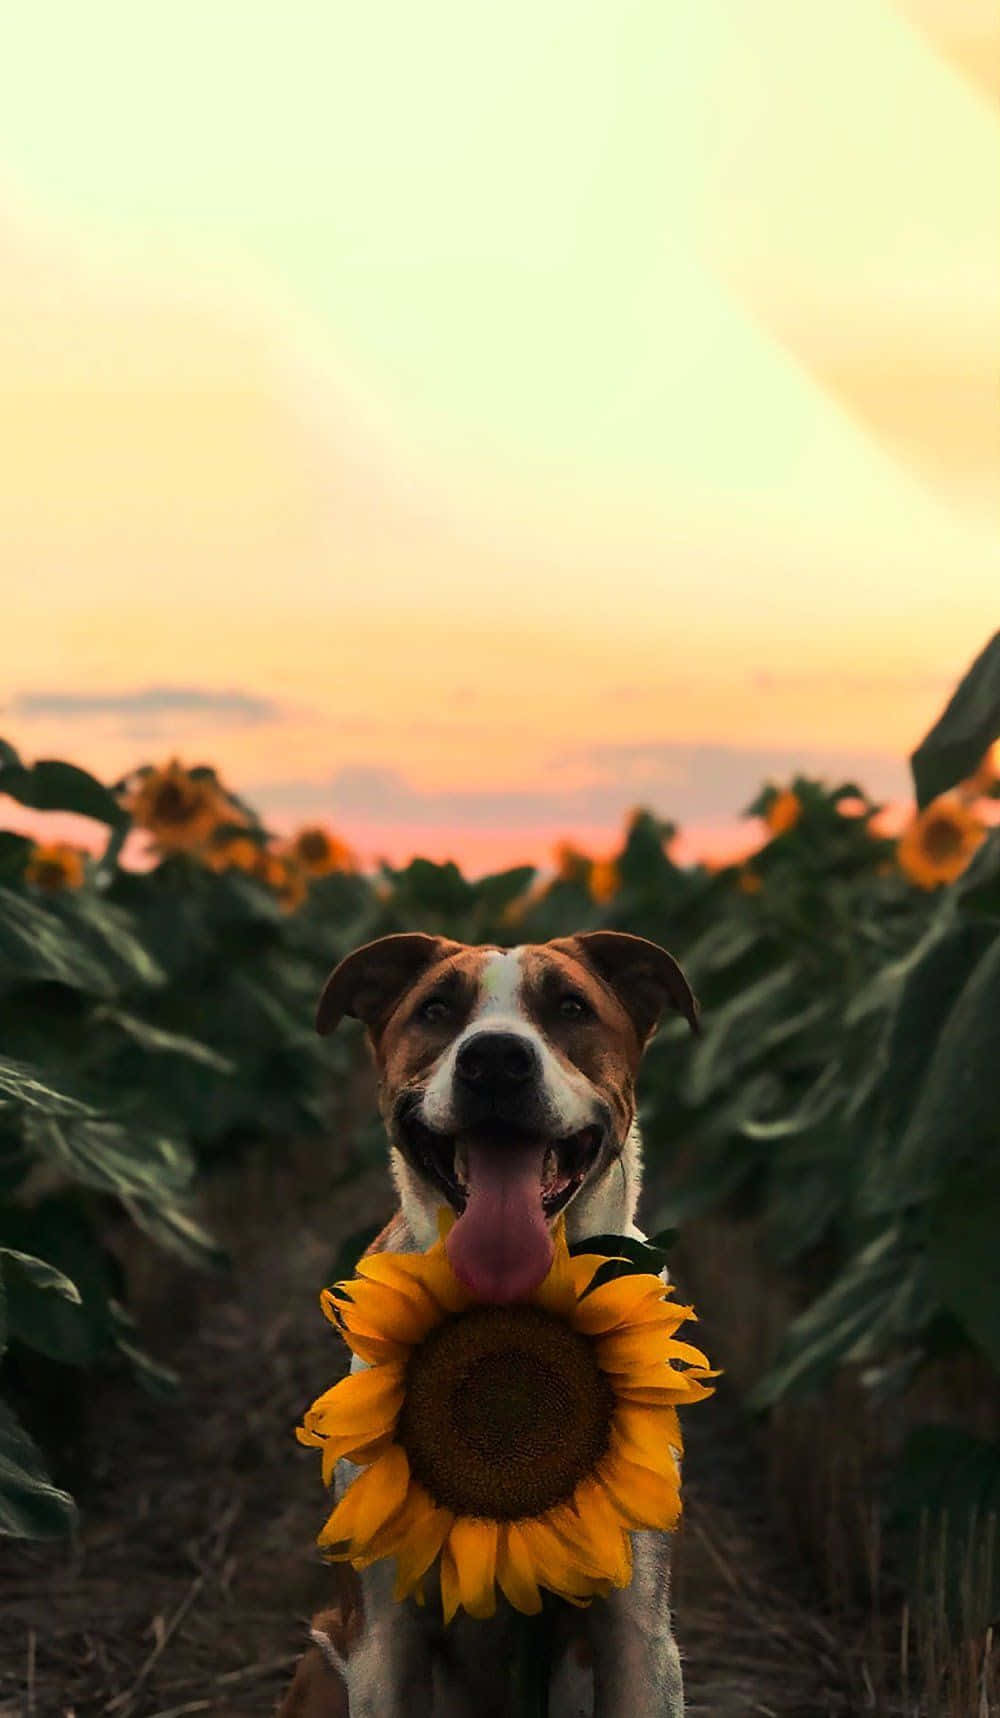 Sunflower Dog Sunset Aesthetic.jpg Wallpaper